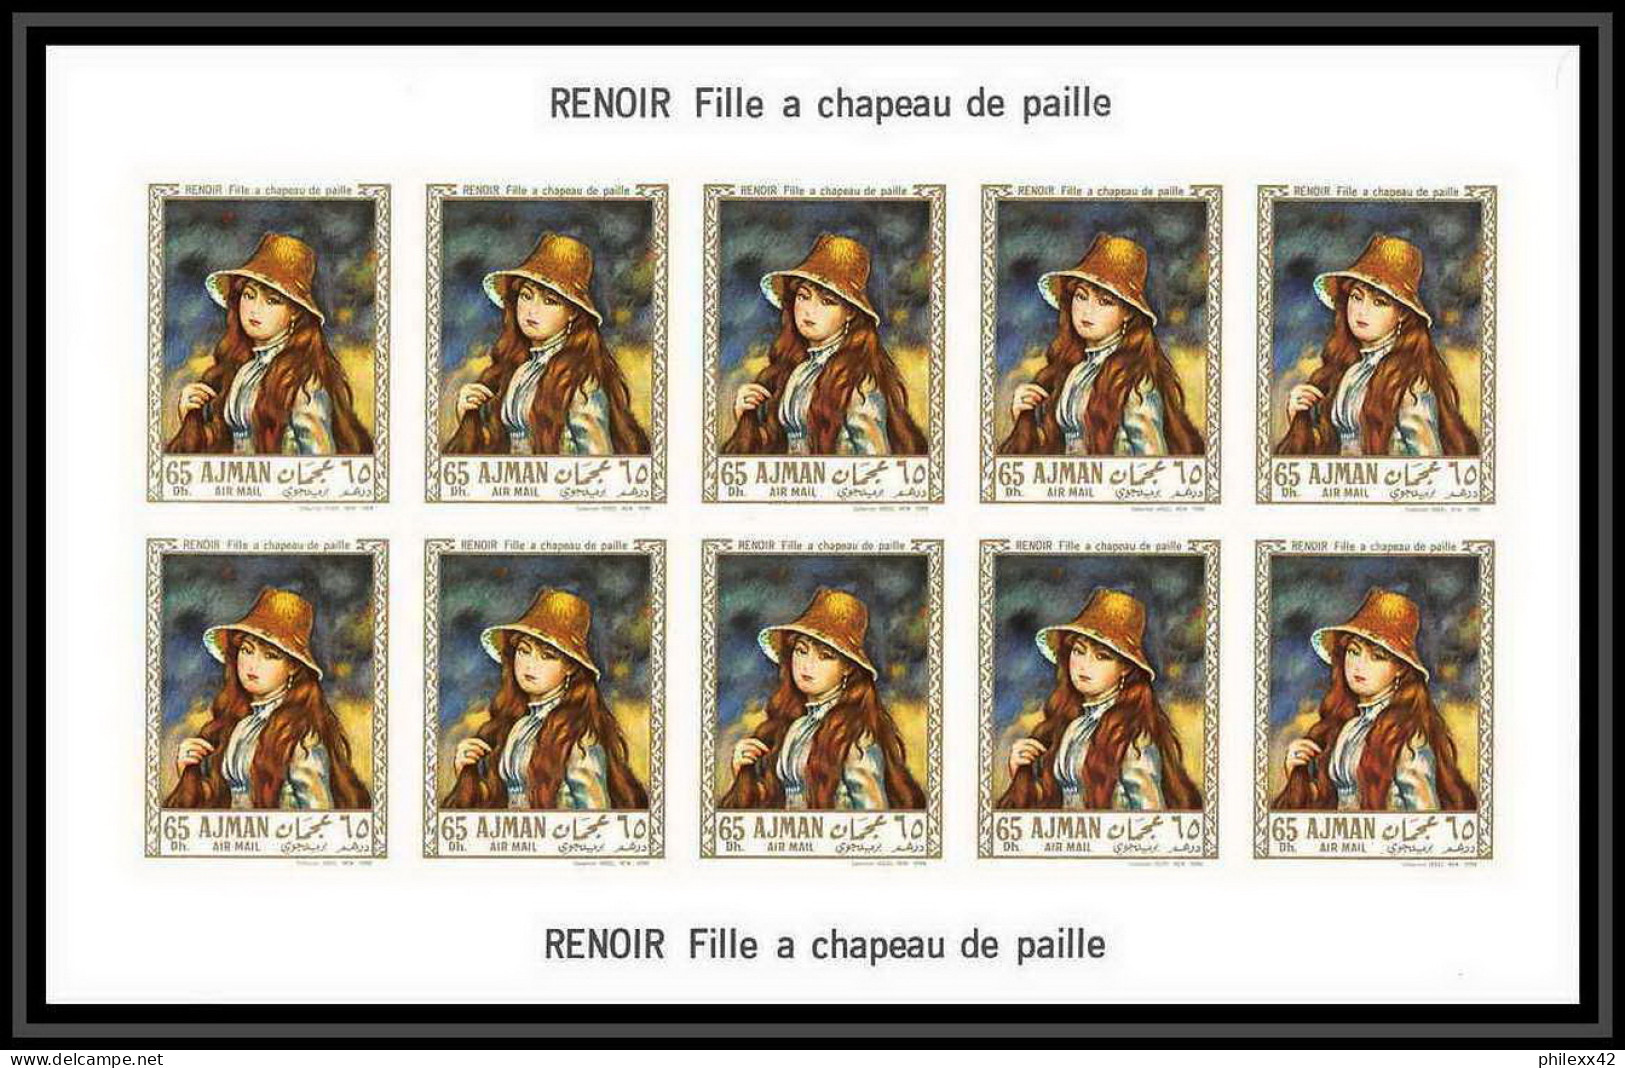 475 Ajman MNH ** N° 209 / 214 B Tableau (tableaux painting) Terbrugghen Renoir feuilles sheets Non dentelé imperf